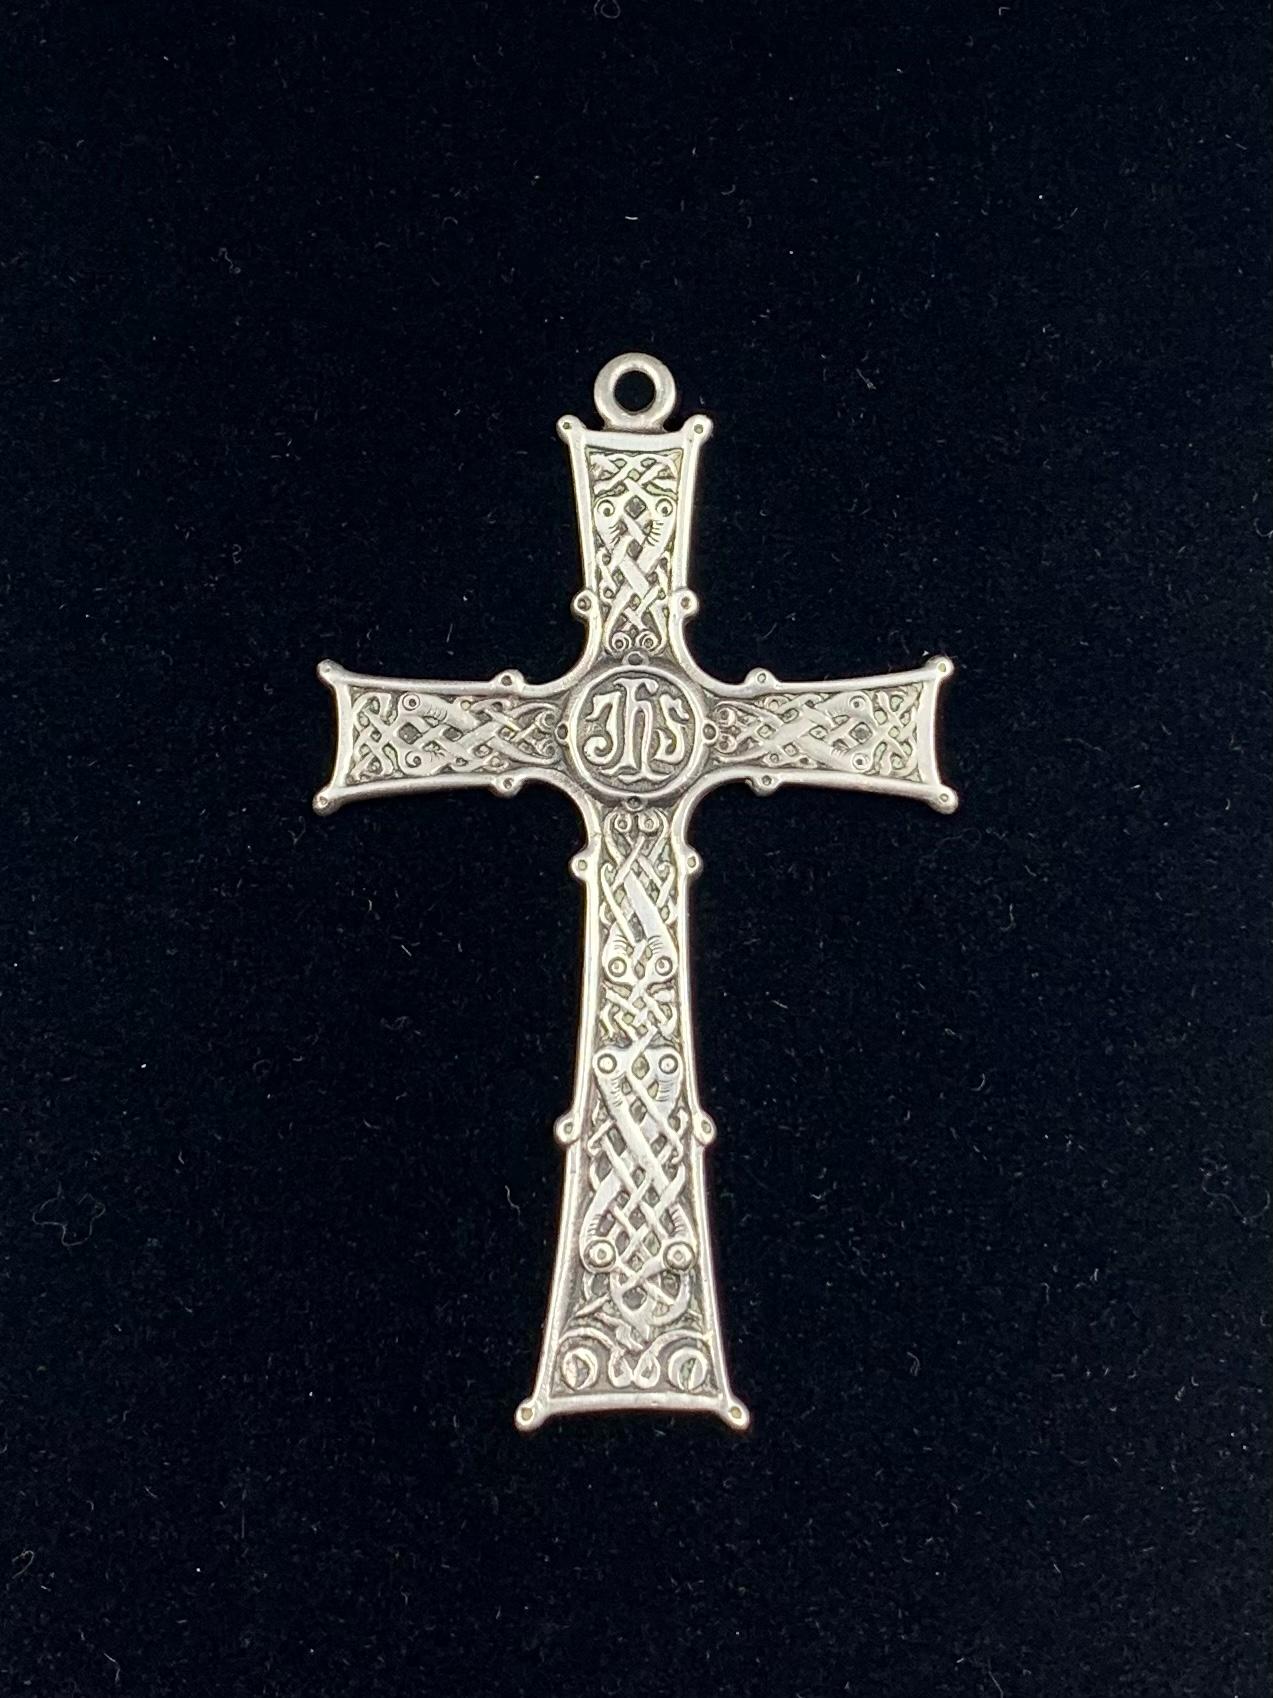 Keltisches Kreuz aus antikem schottischem Silber mit kunstvoll verzierten Armen mit verschlungenen Motiven im mittelalterlichen Stil und einem zentralen Nimbus mit einem Christogramm, den stilisierten Buchstaben JHS für Jesus Hominis Salvatus, oder